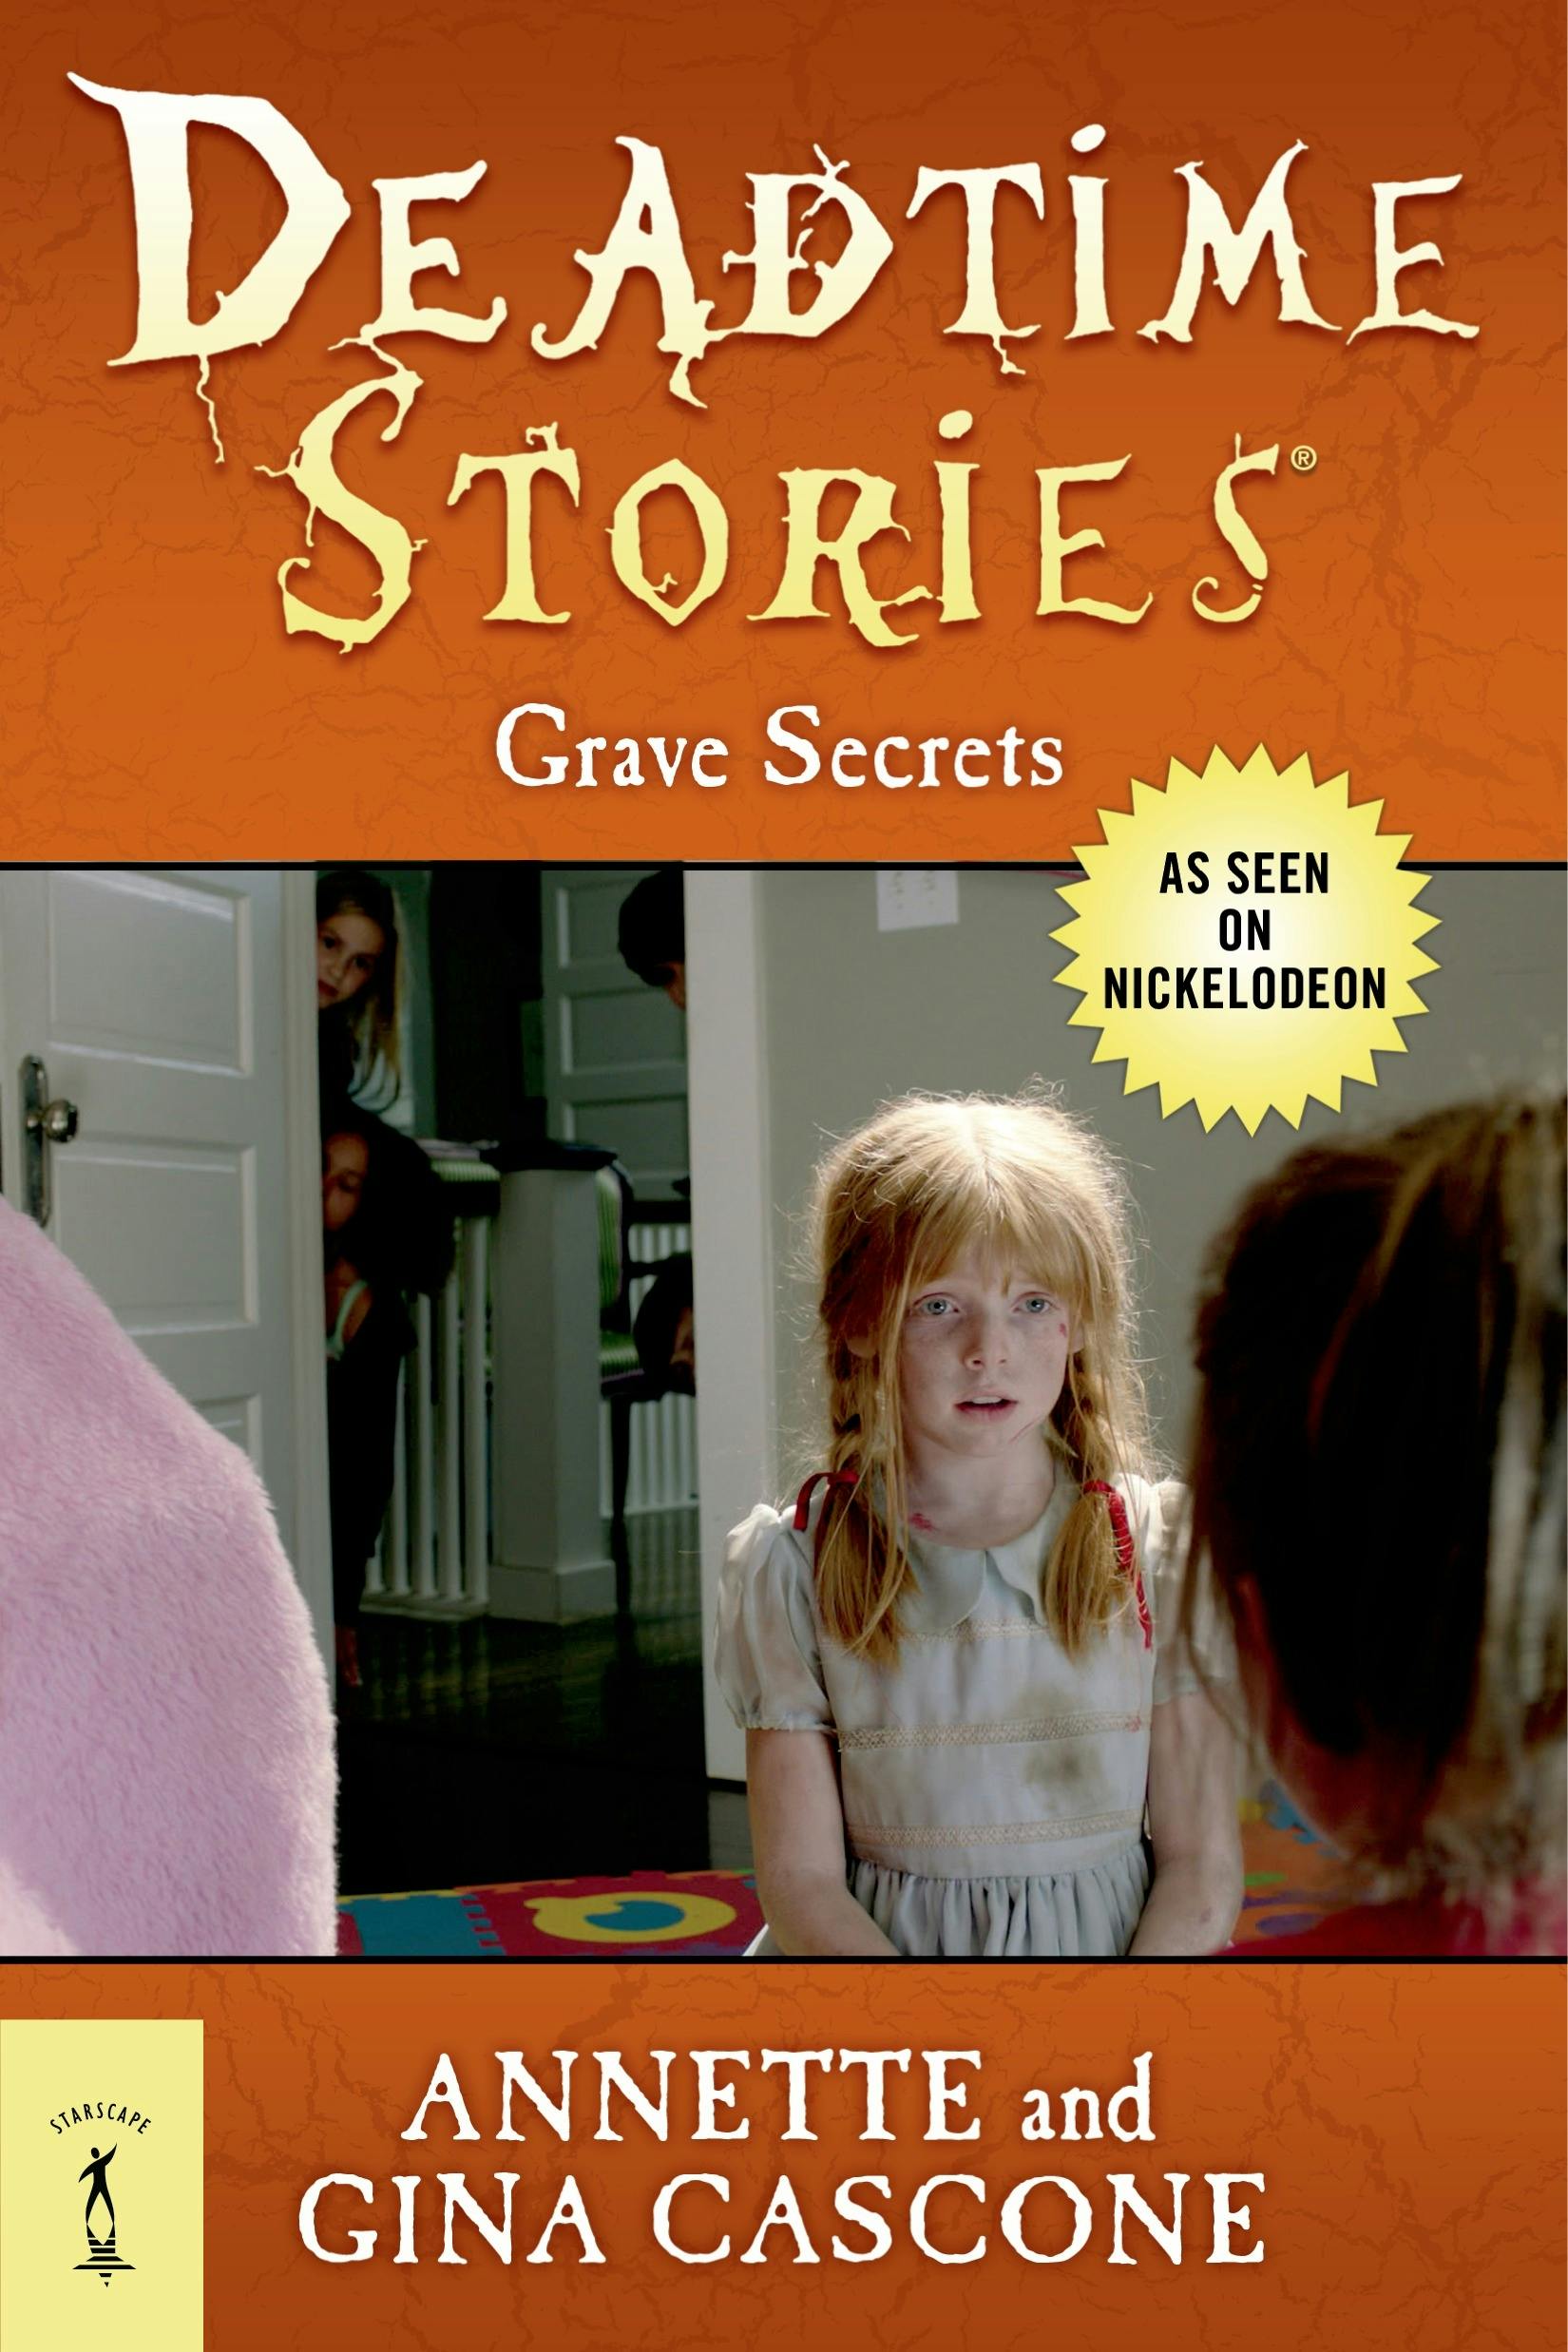 Deadtime Stories: Grave Secrets